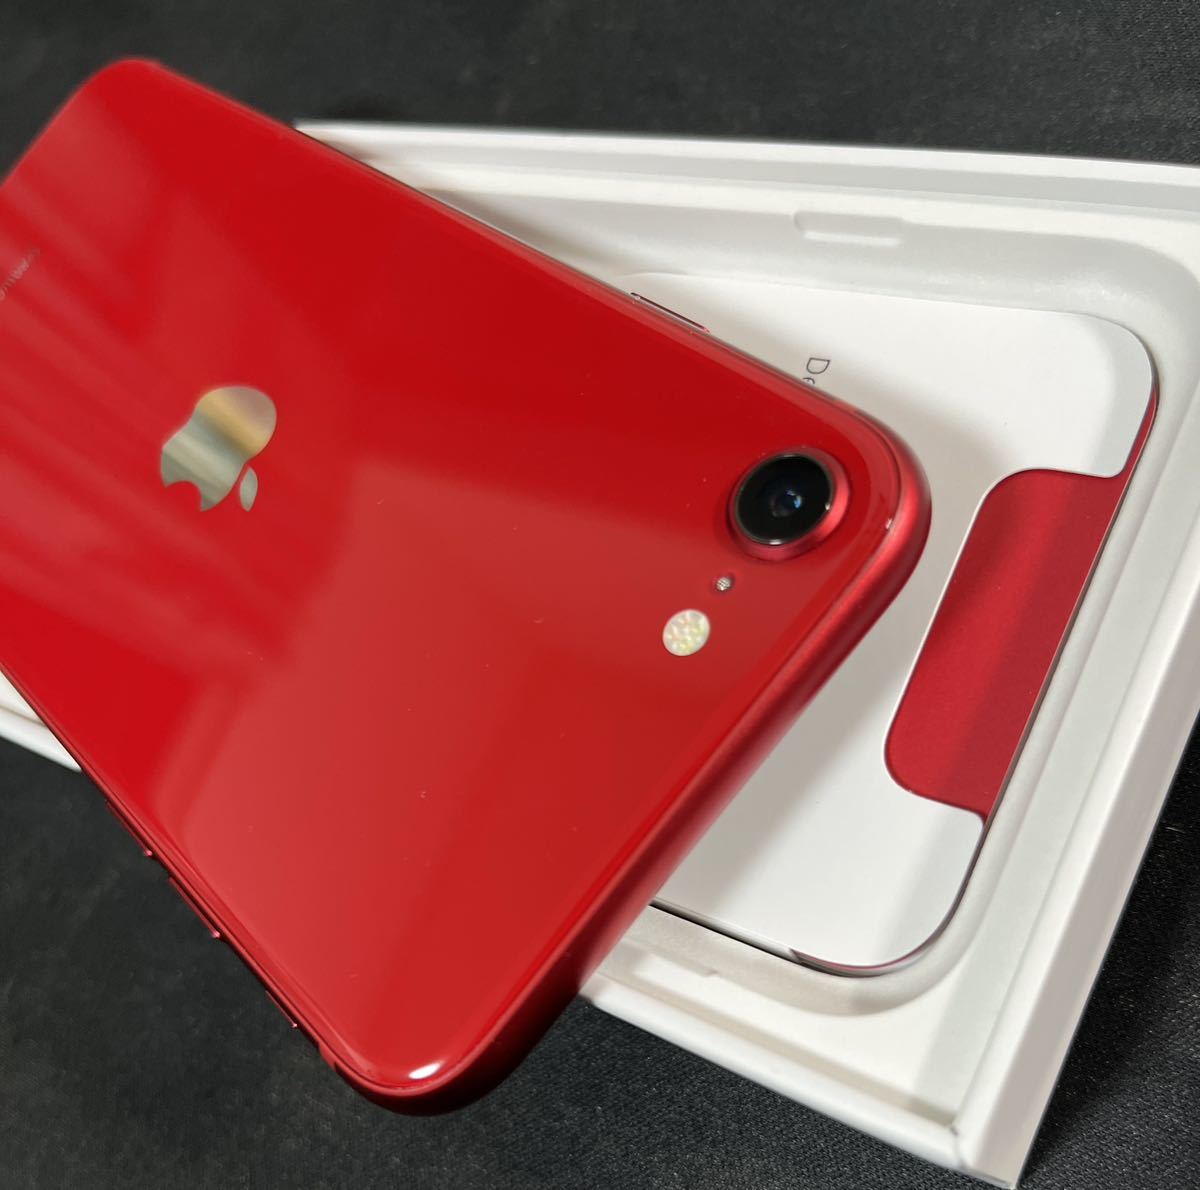 SIMフリー iPhone SE 第3世代 64GB Red 赤 付属品 箱付き バッテリー 